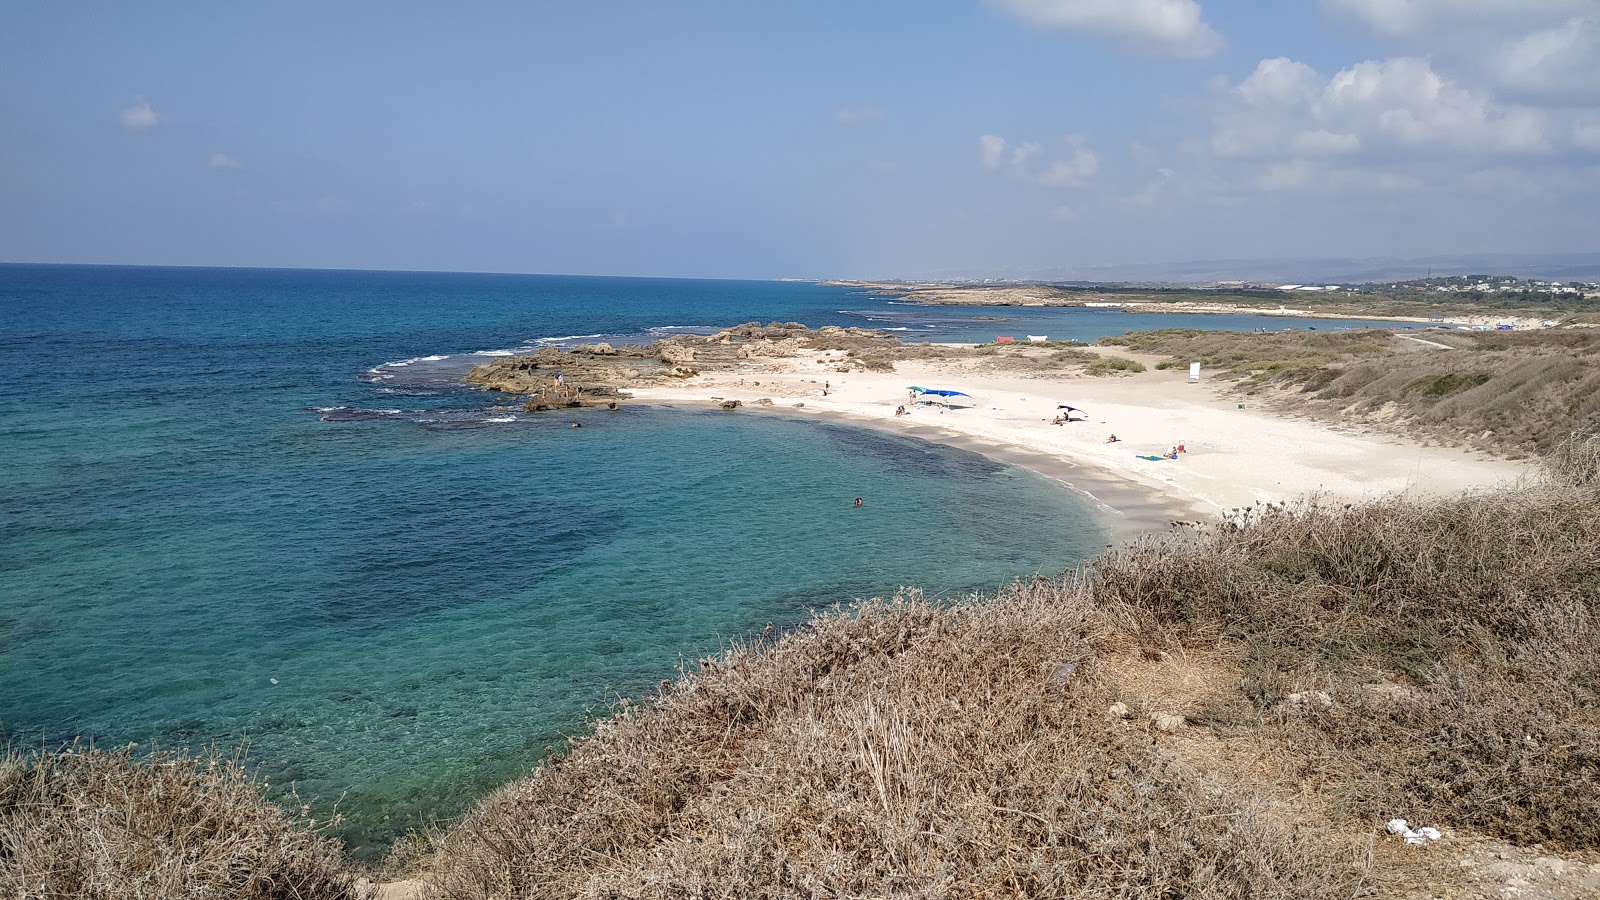 Zdjęcie Nachsholim beach z powierzchnią turkusowa woda